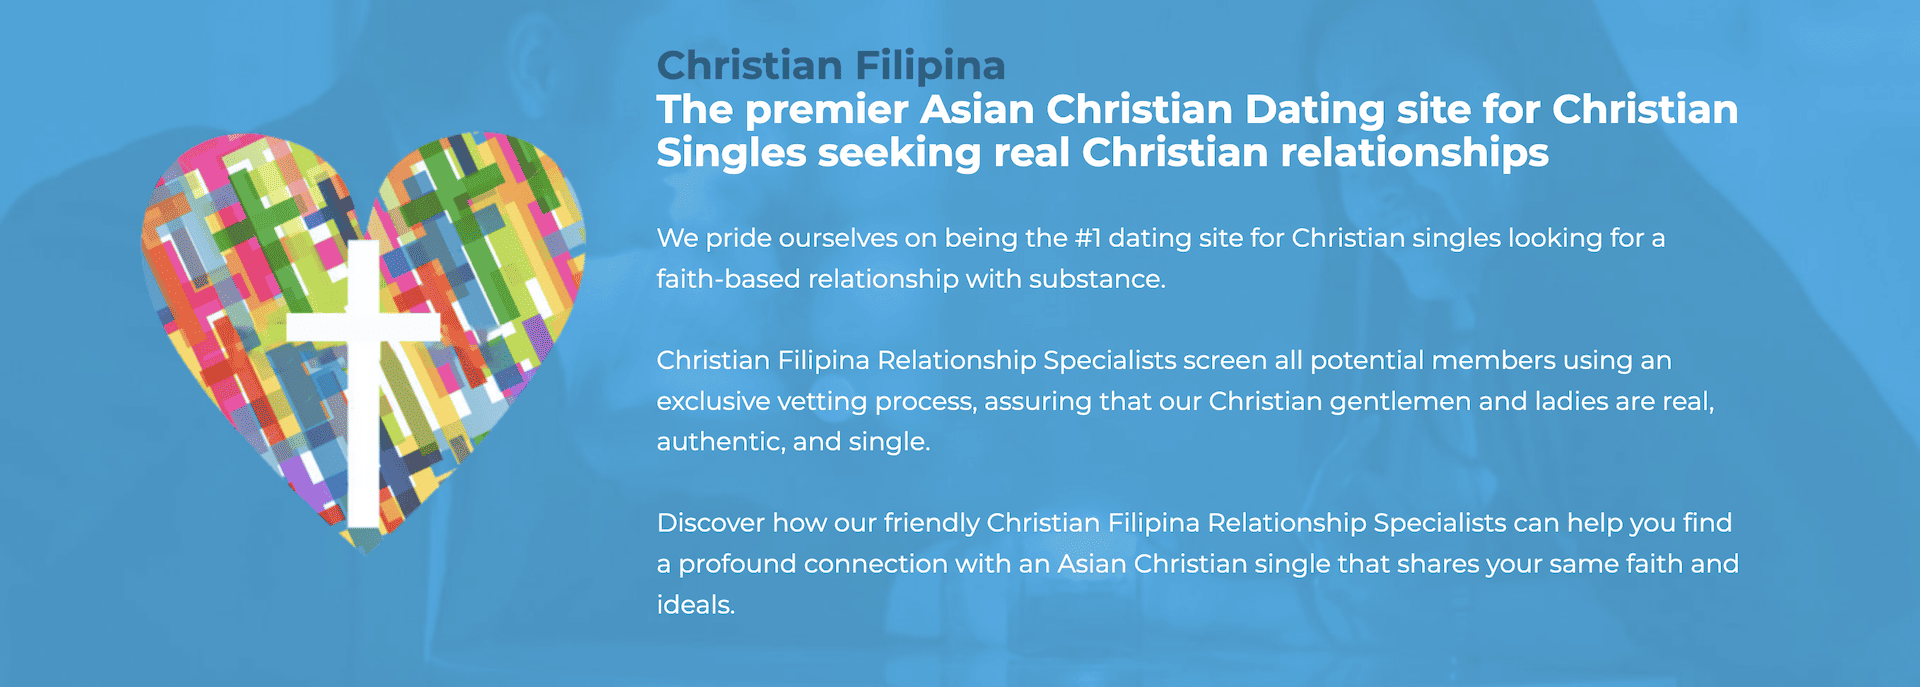 ChristianFilipina.com